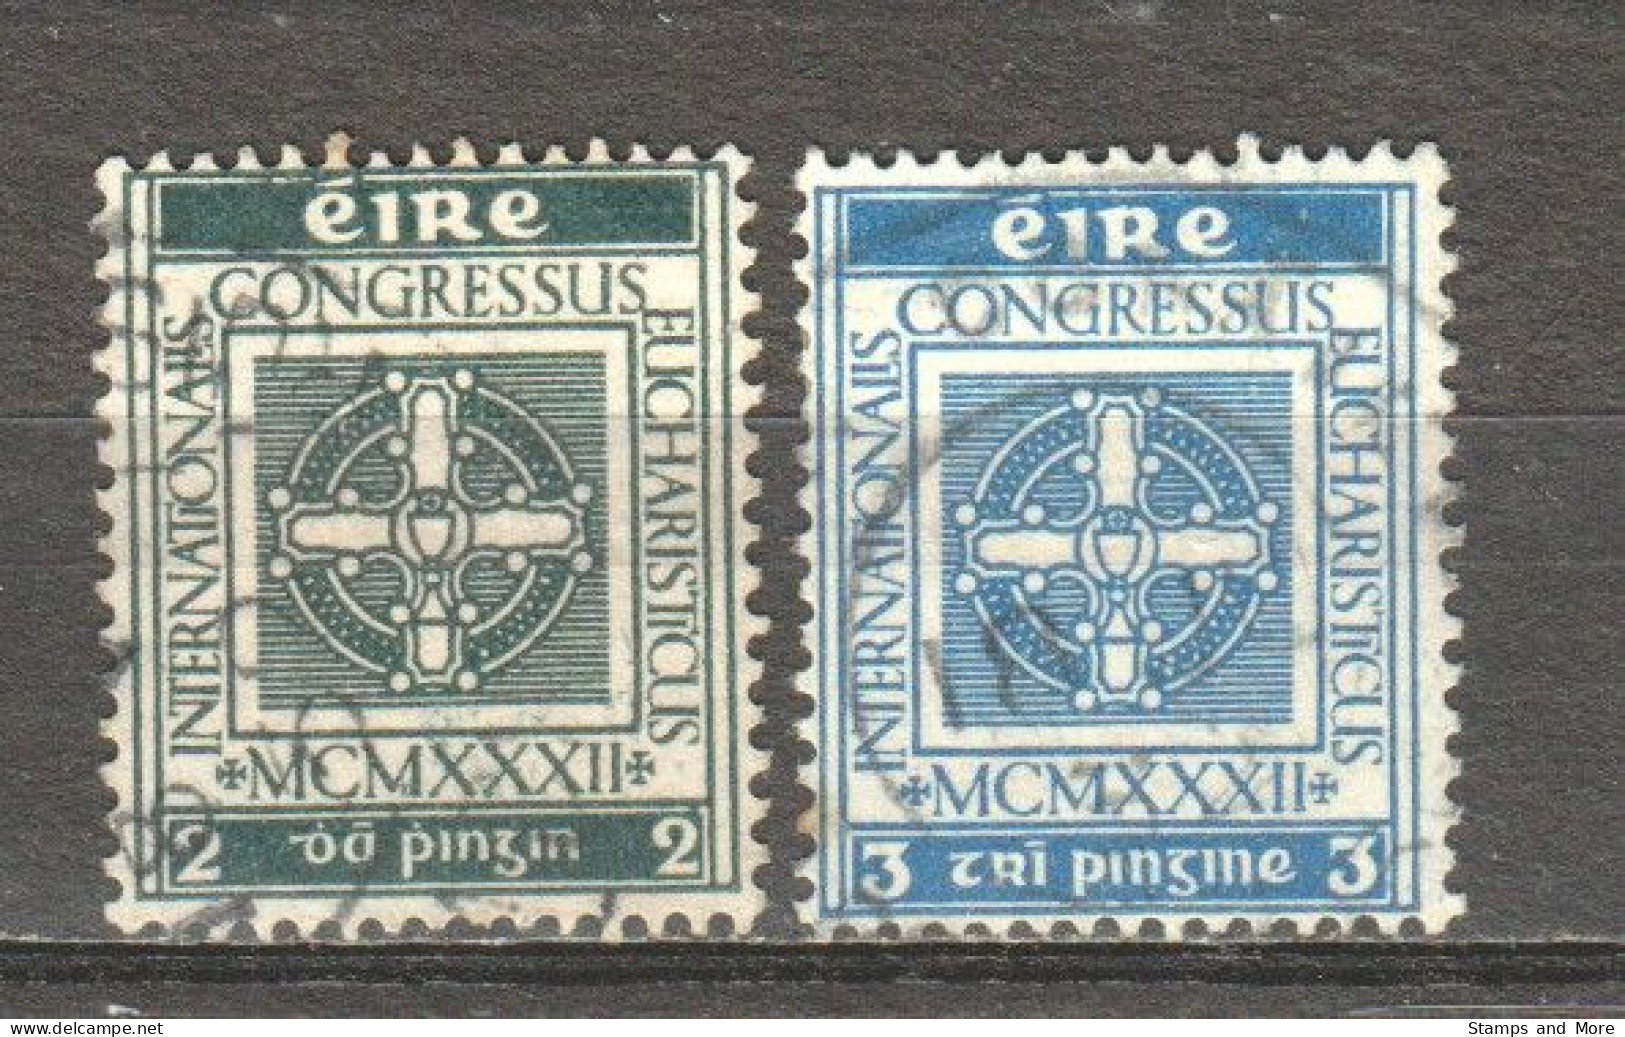 Ireland Eire 1932 Mi 57-58 Canceled - Used Stamps